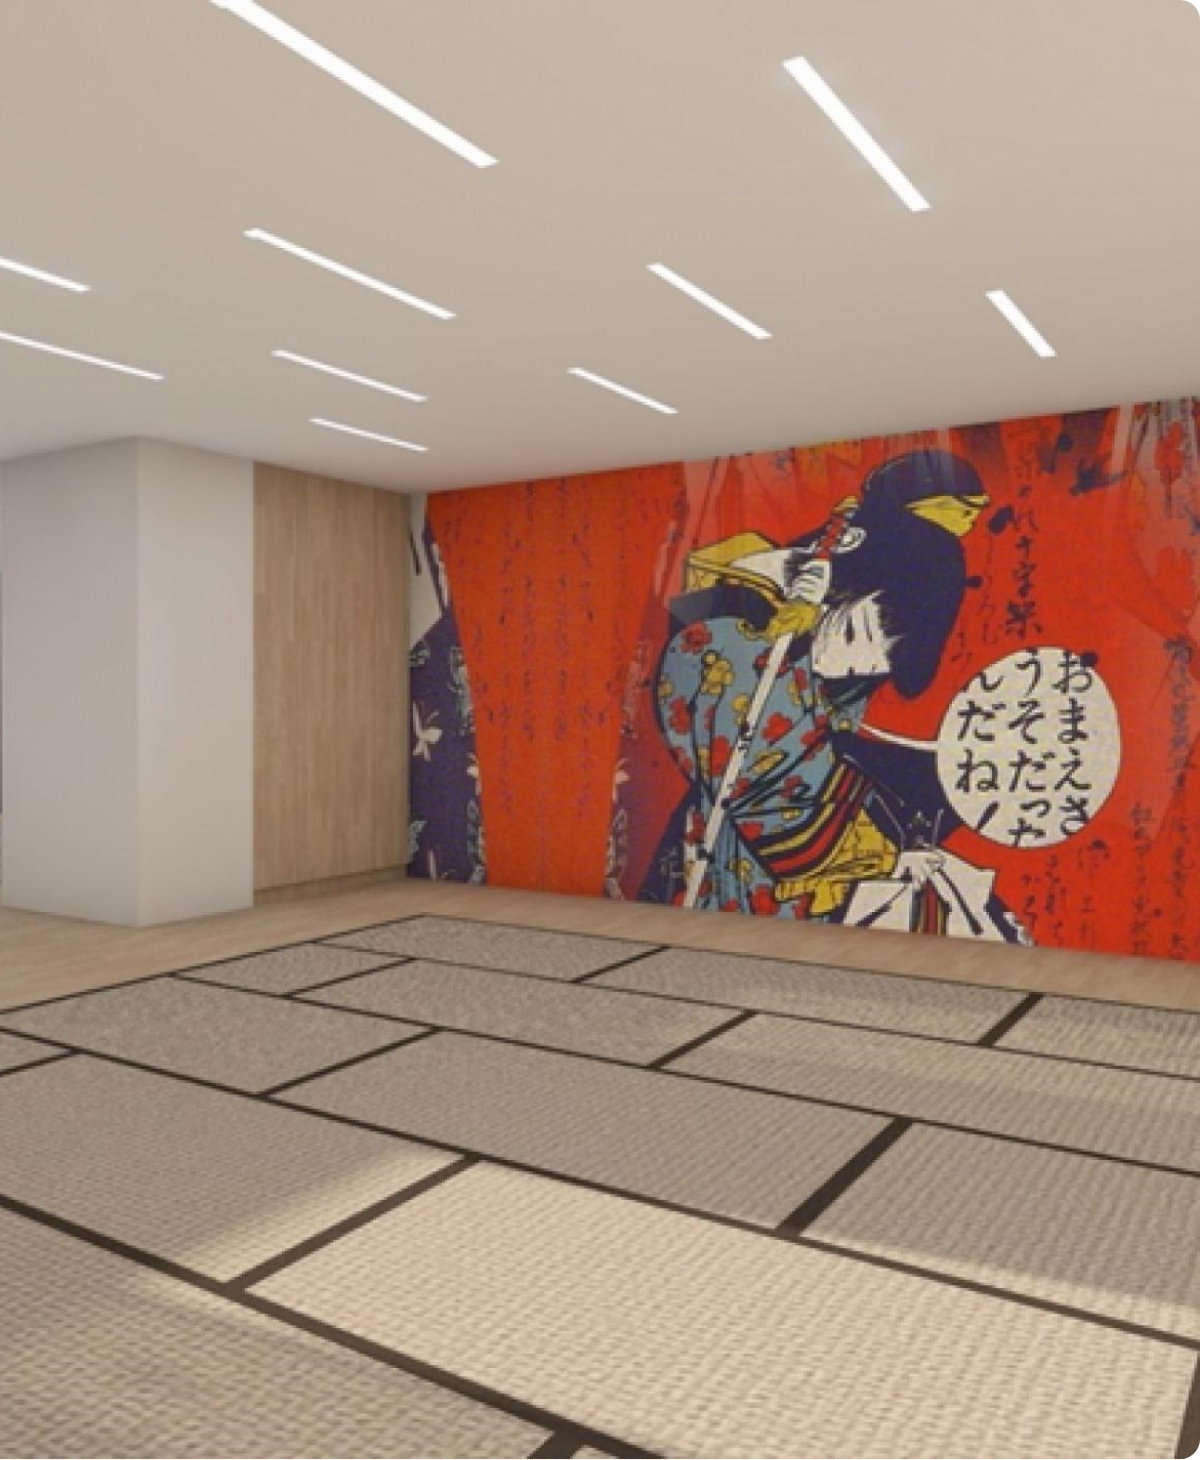 zdjęcie przedstawiające japoński mural w budynku